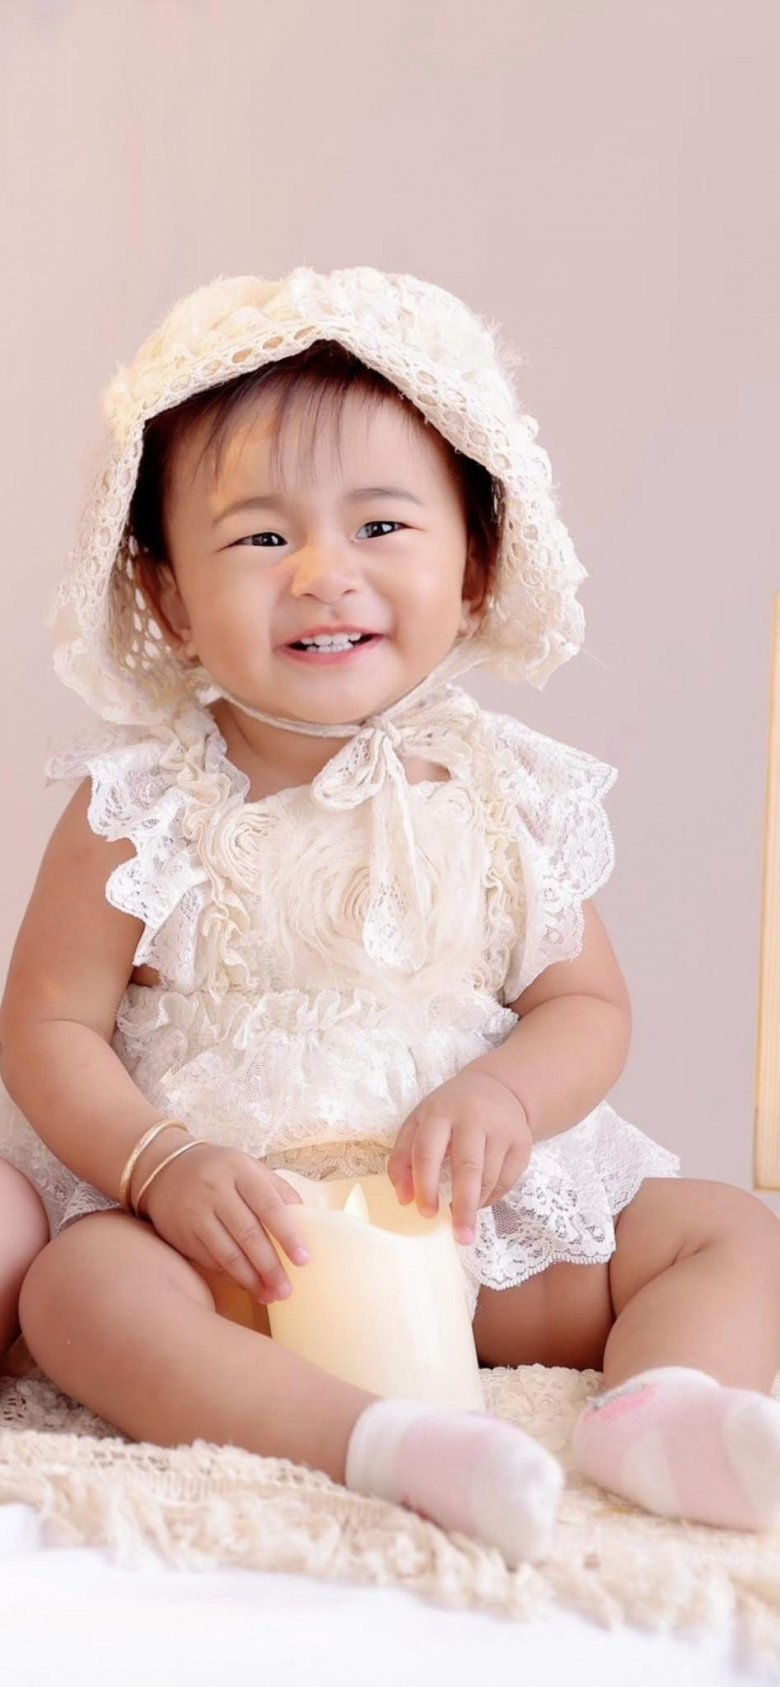 Được nuôi nấng bởi 2 người bố, ái nữ Hà Trí Quang vẫn được chăm chút ngoại hình. Mỗi khi chụp ảnh cùng gia đình, cô bé luôn điệu đà với đủ loại váy áo, phụ kiện lung linh chuẩn tiểu công chúa.